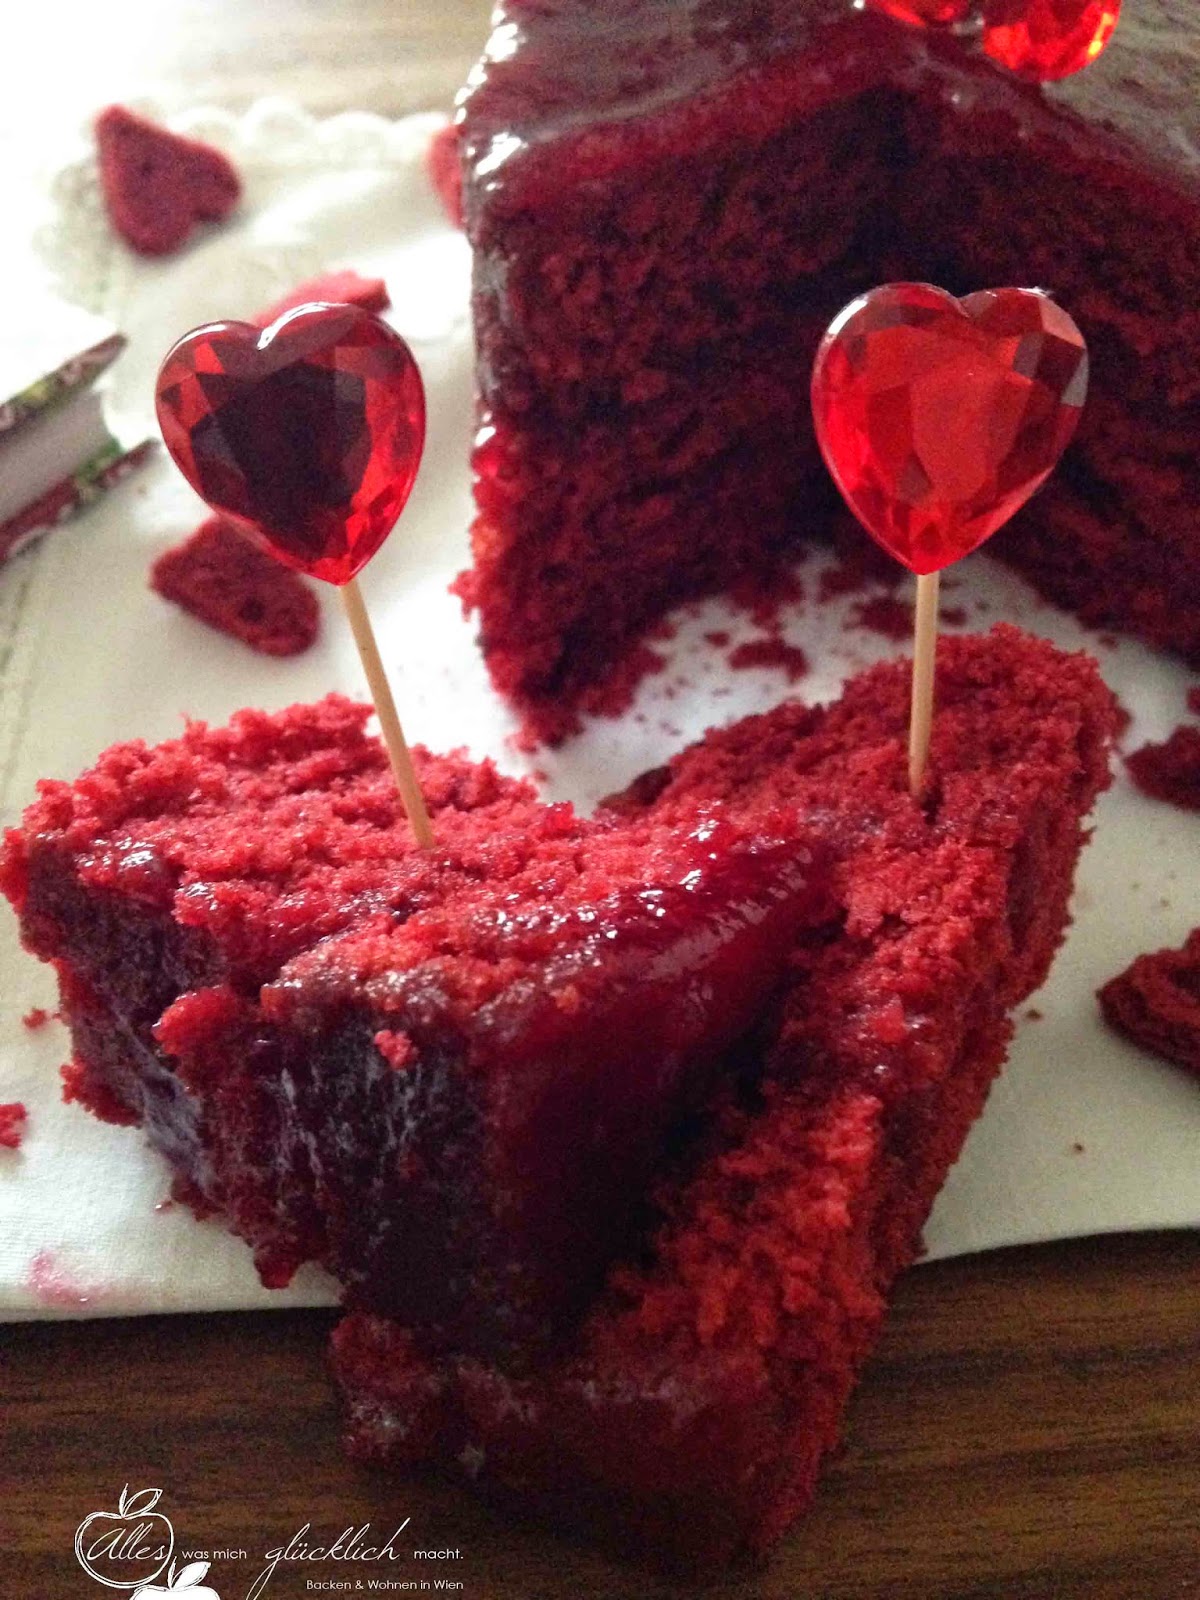 Alles was mich glücklich macht: Red Velvet Cake oder simple gesagt ...